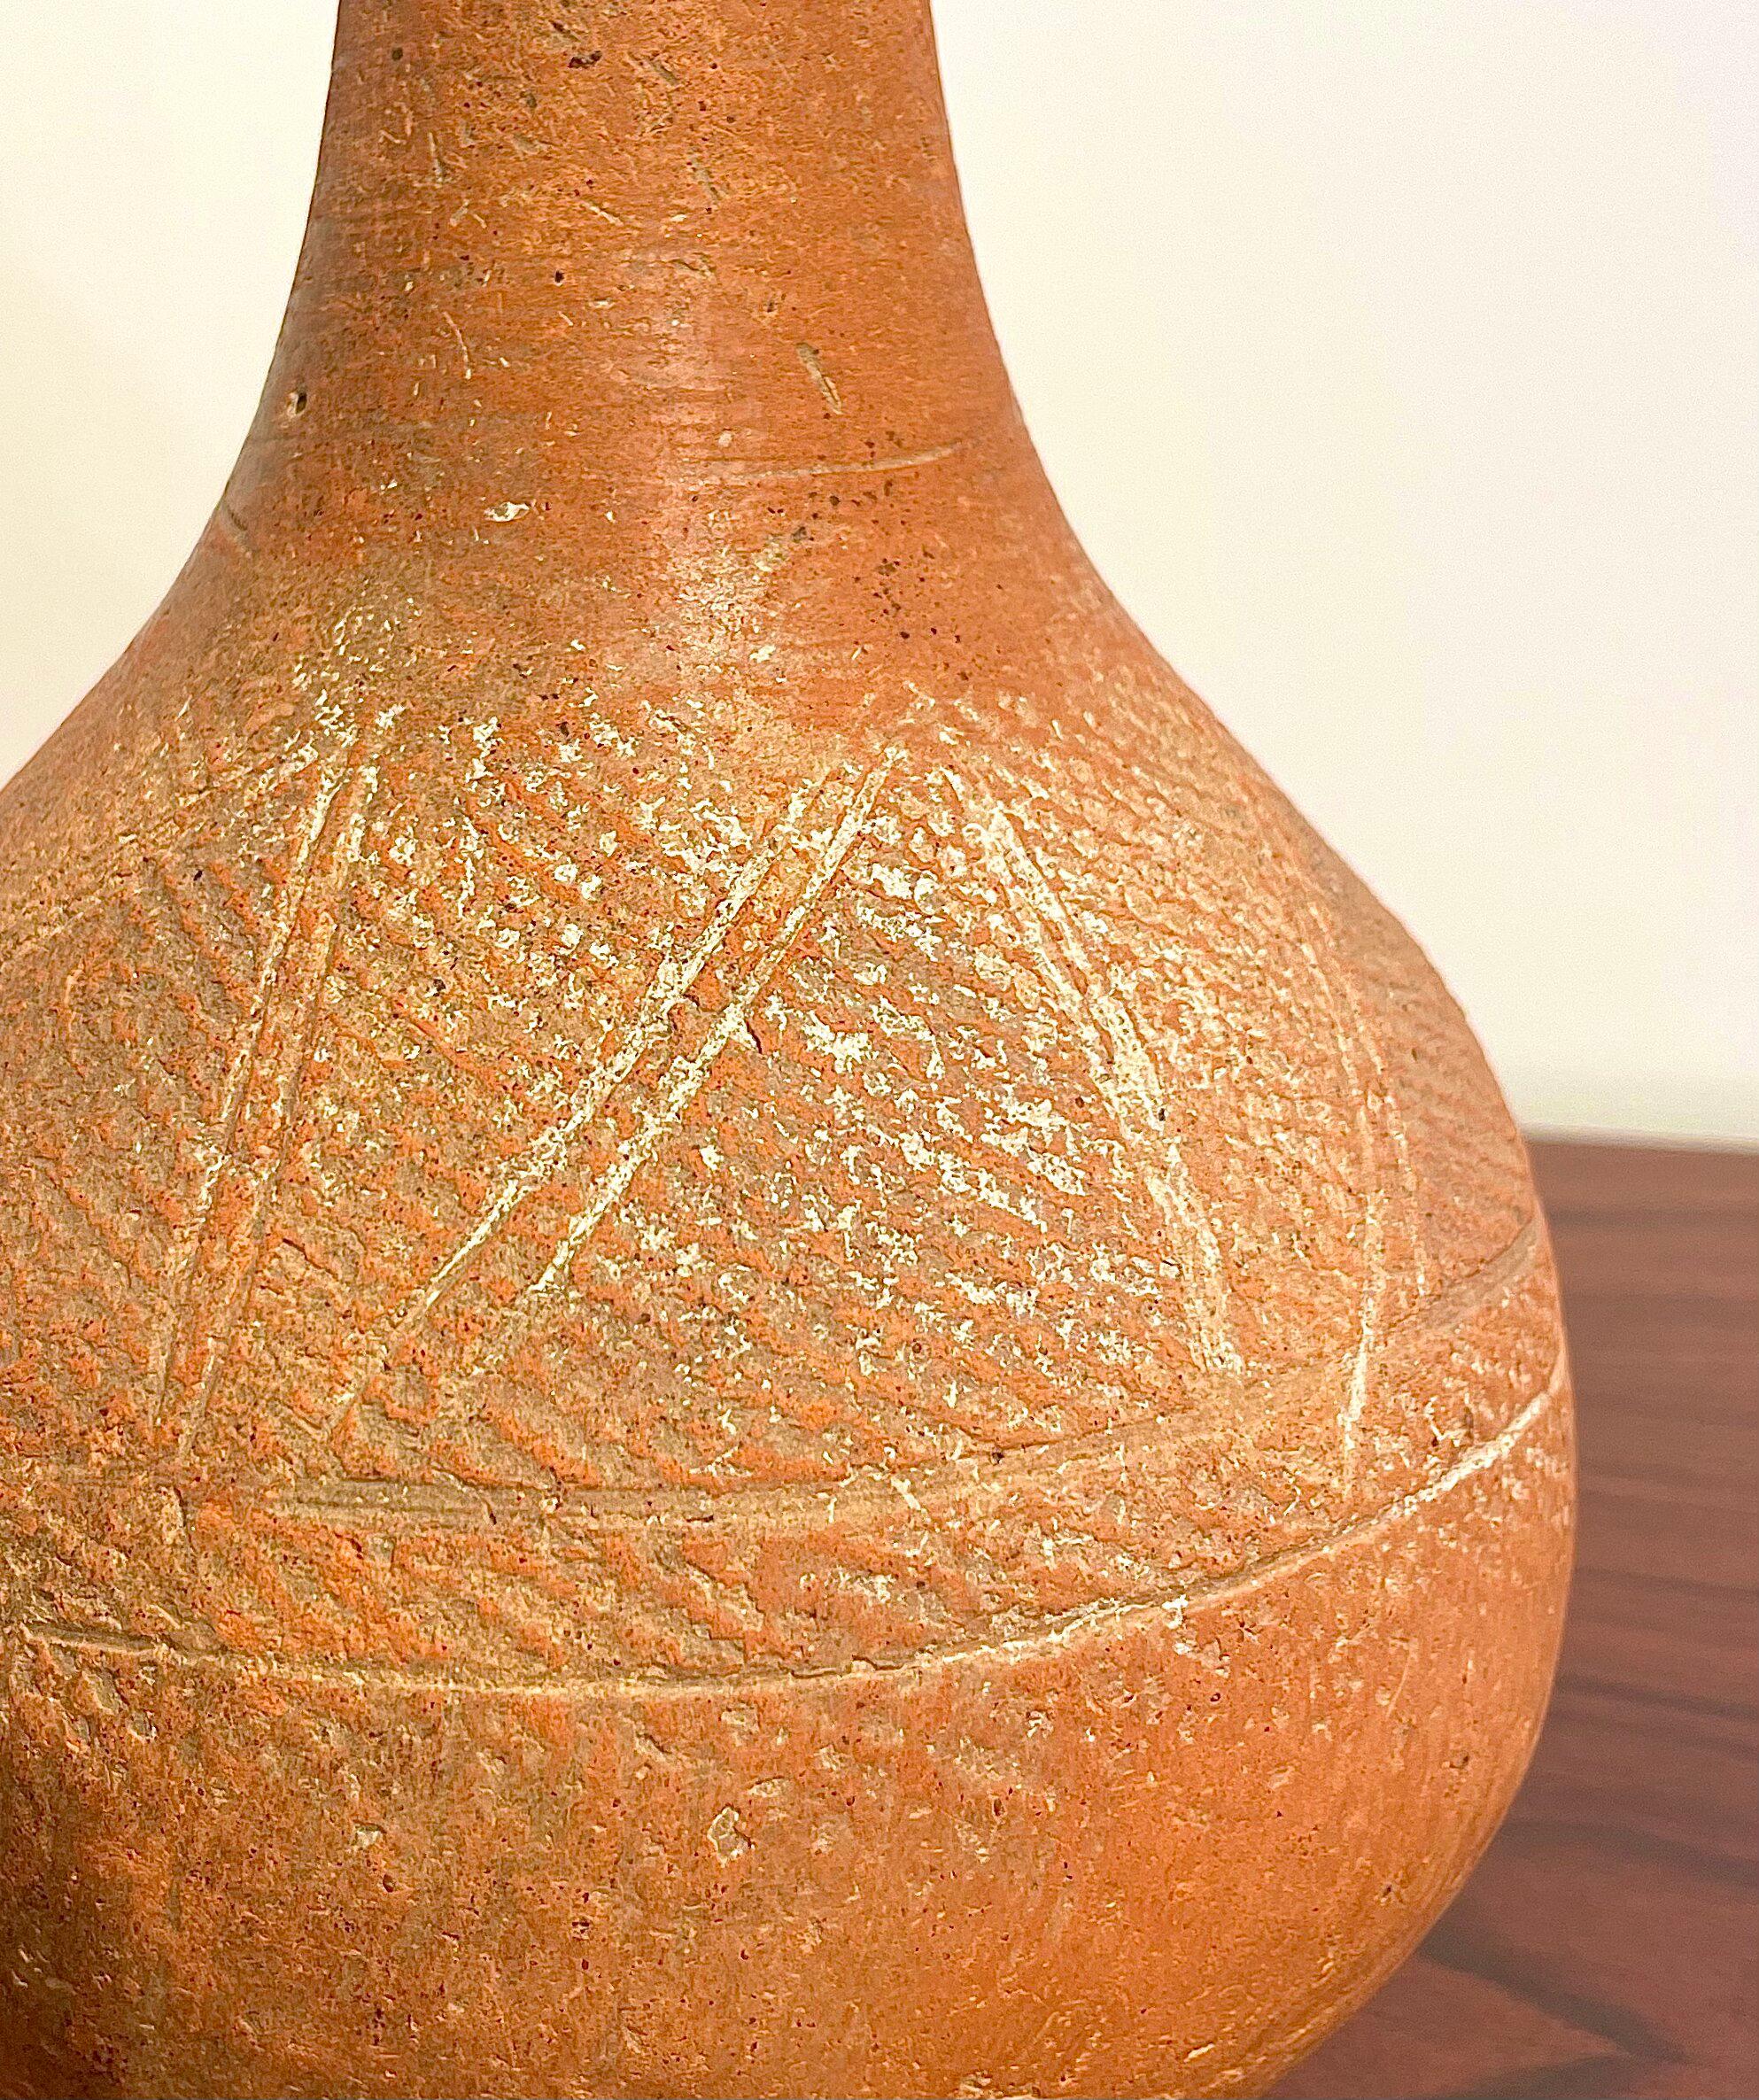 Peut-être 15e-17e s. objet de fouille du Niger (Afrique), belle engobe en argile rouge avec bandes incisées, col haut se terminant par une lèvre évasée, bel exemplaire. 
Bel objet décoratif et ethnique.